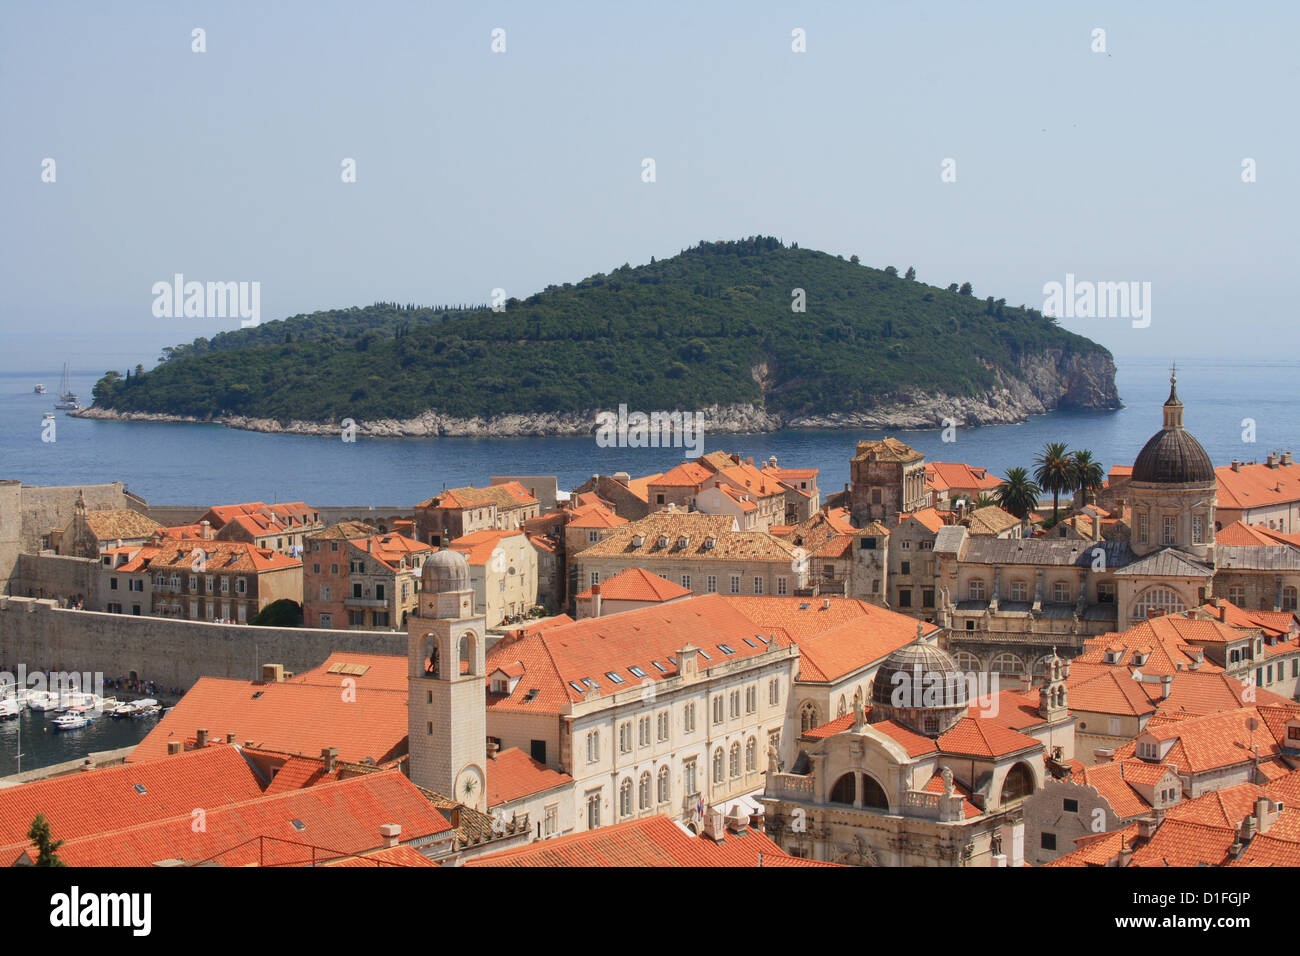 Toits de tuiles rouges et l'île sur un arrière-plan. Dubrovnik, Croatie. Banque D'Images